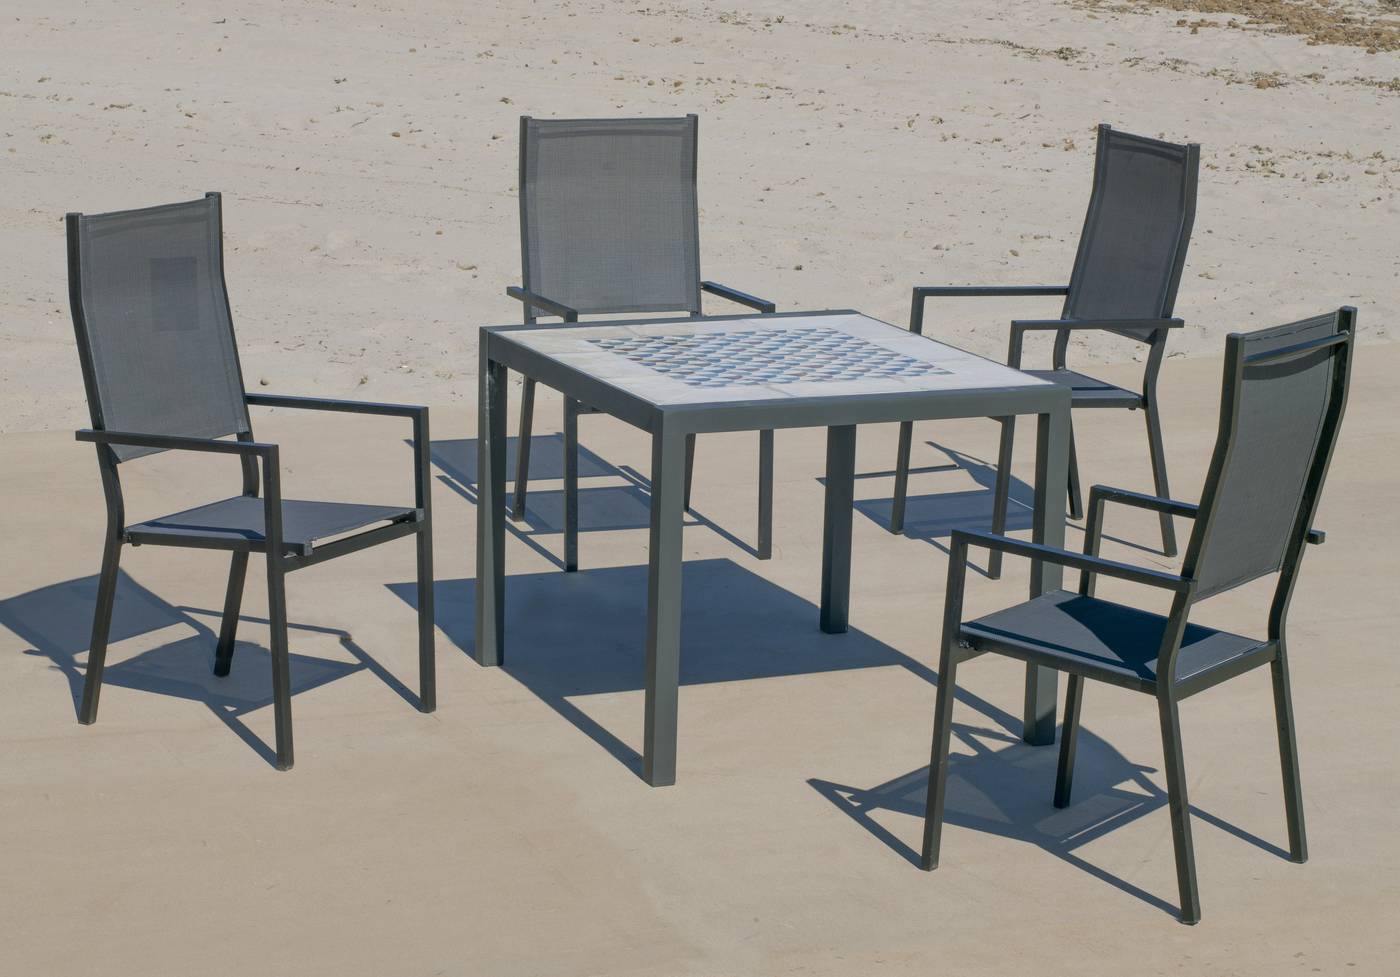 Conjunto de aluminio color antracita: Mesa cuadrada con tablero mosaico de 90 cm + 4 sillones altos de textilen.